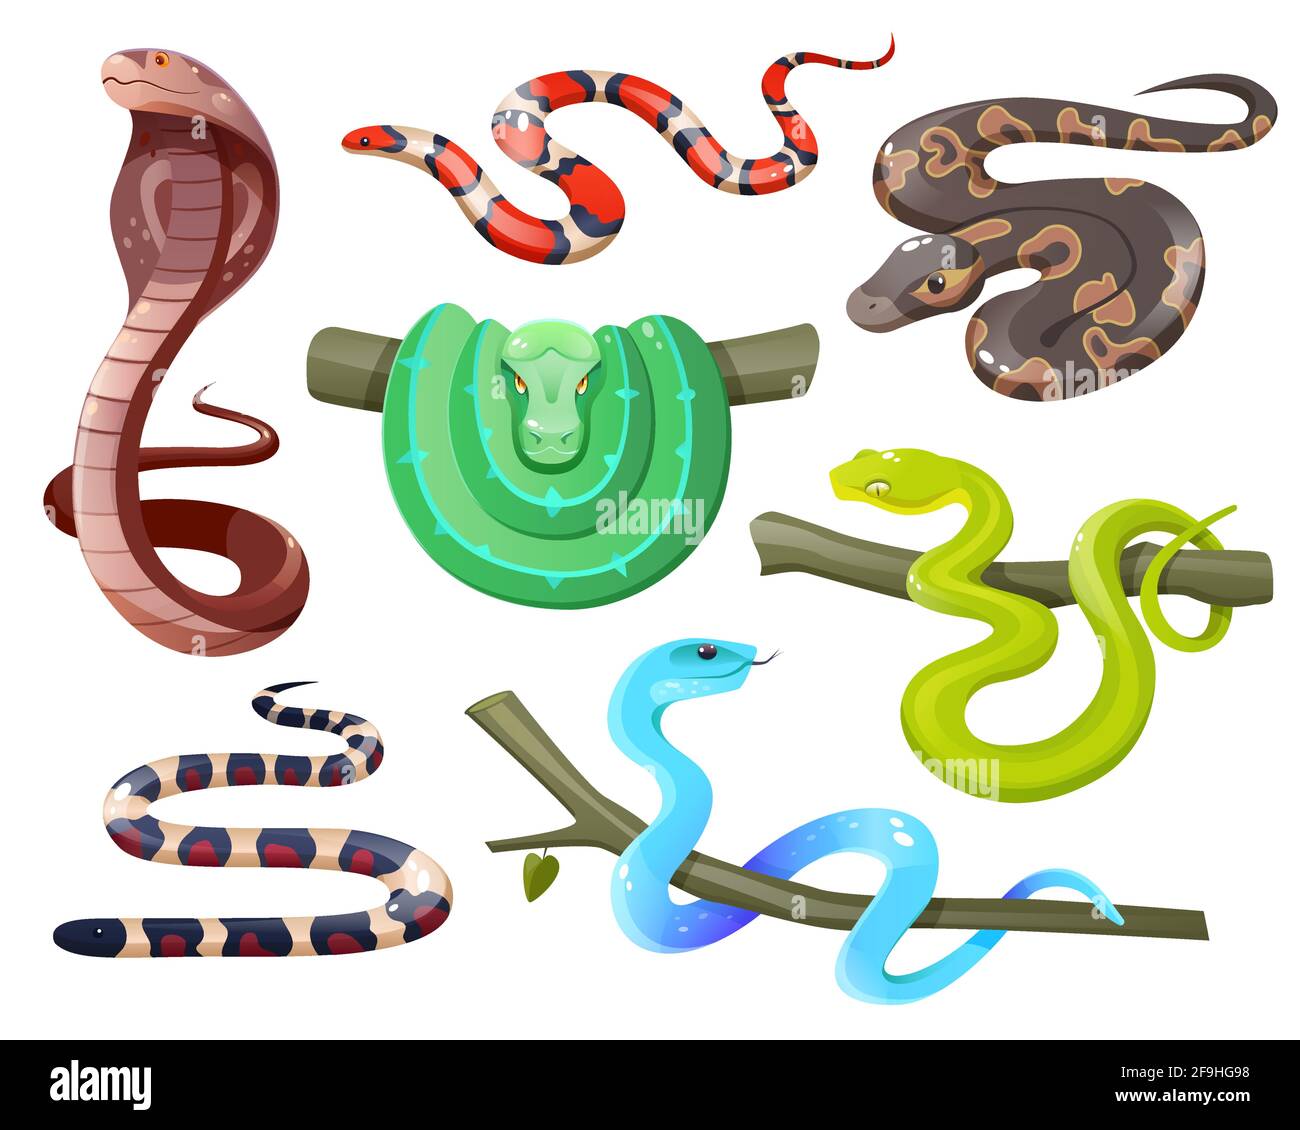 Serpenti, serpenti tropicali selvaggi isolati su sfondo bianco. Cobra, il serpente di montagna della california, il pitone verde dell'albero e della sfera, il salazar di trimeresurus e insularis. Cartoni animati vettoriali di rettili esotici Illustrazione Vettoriale